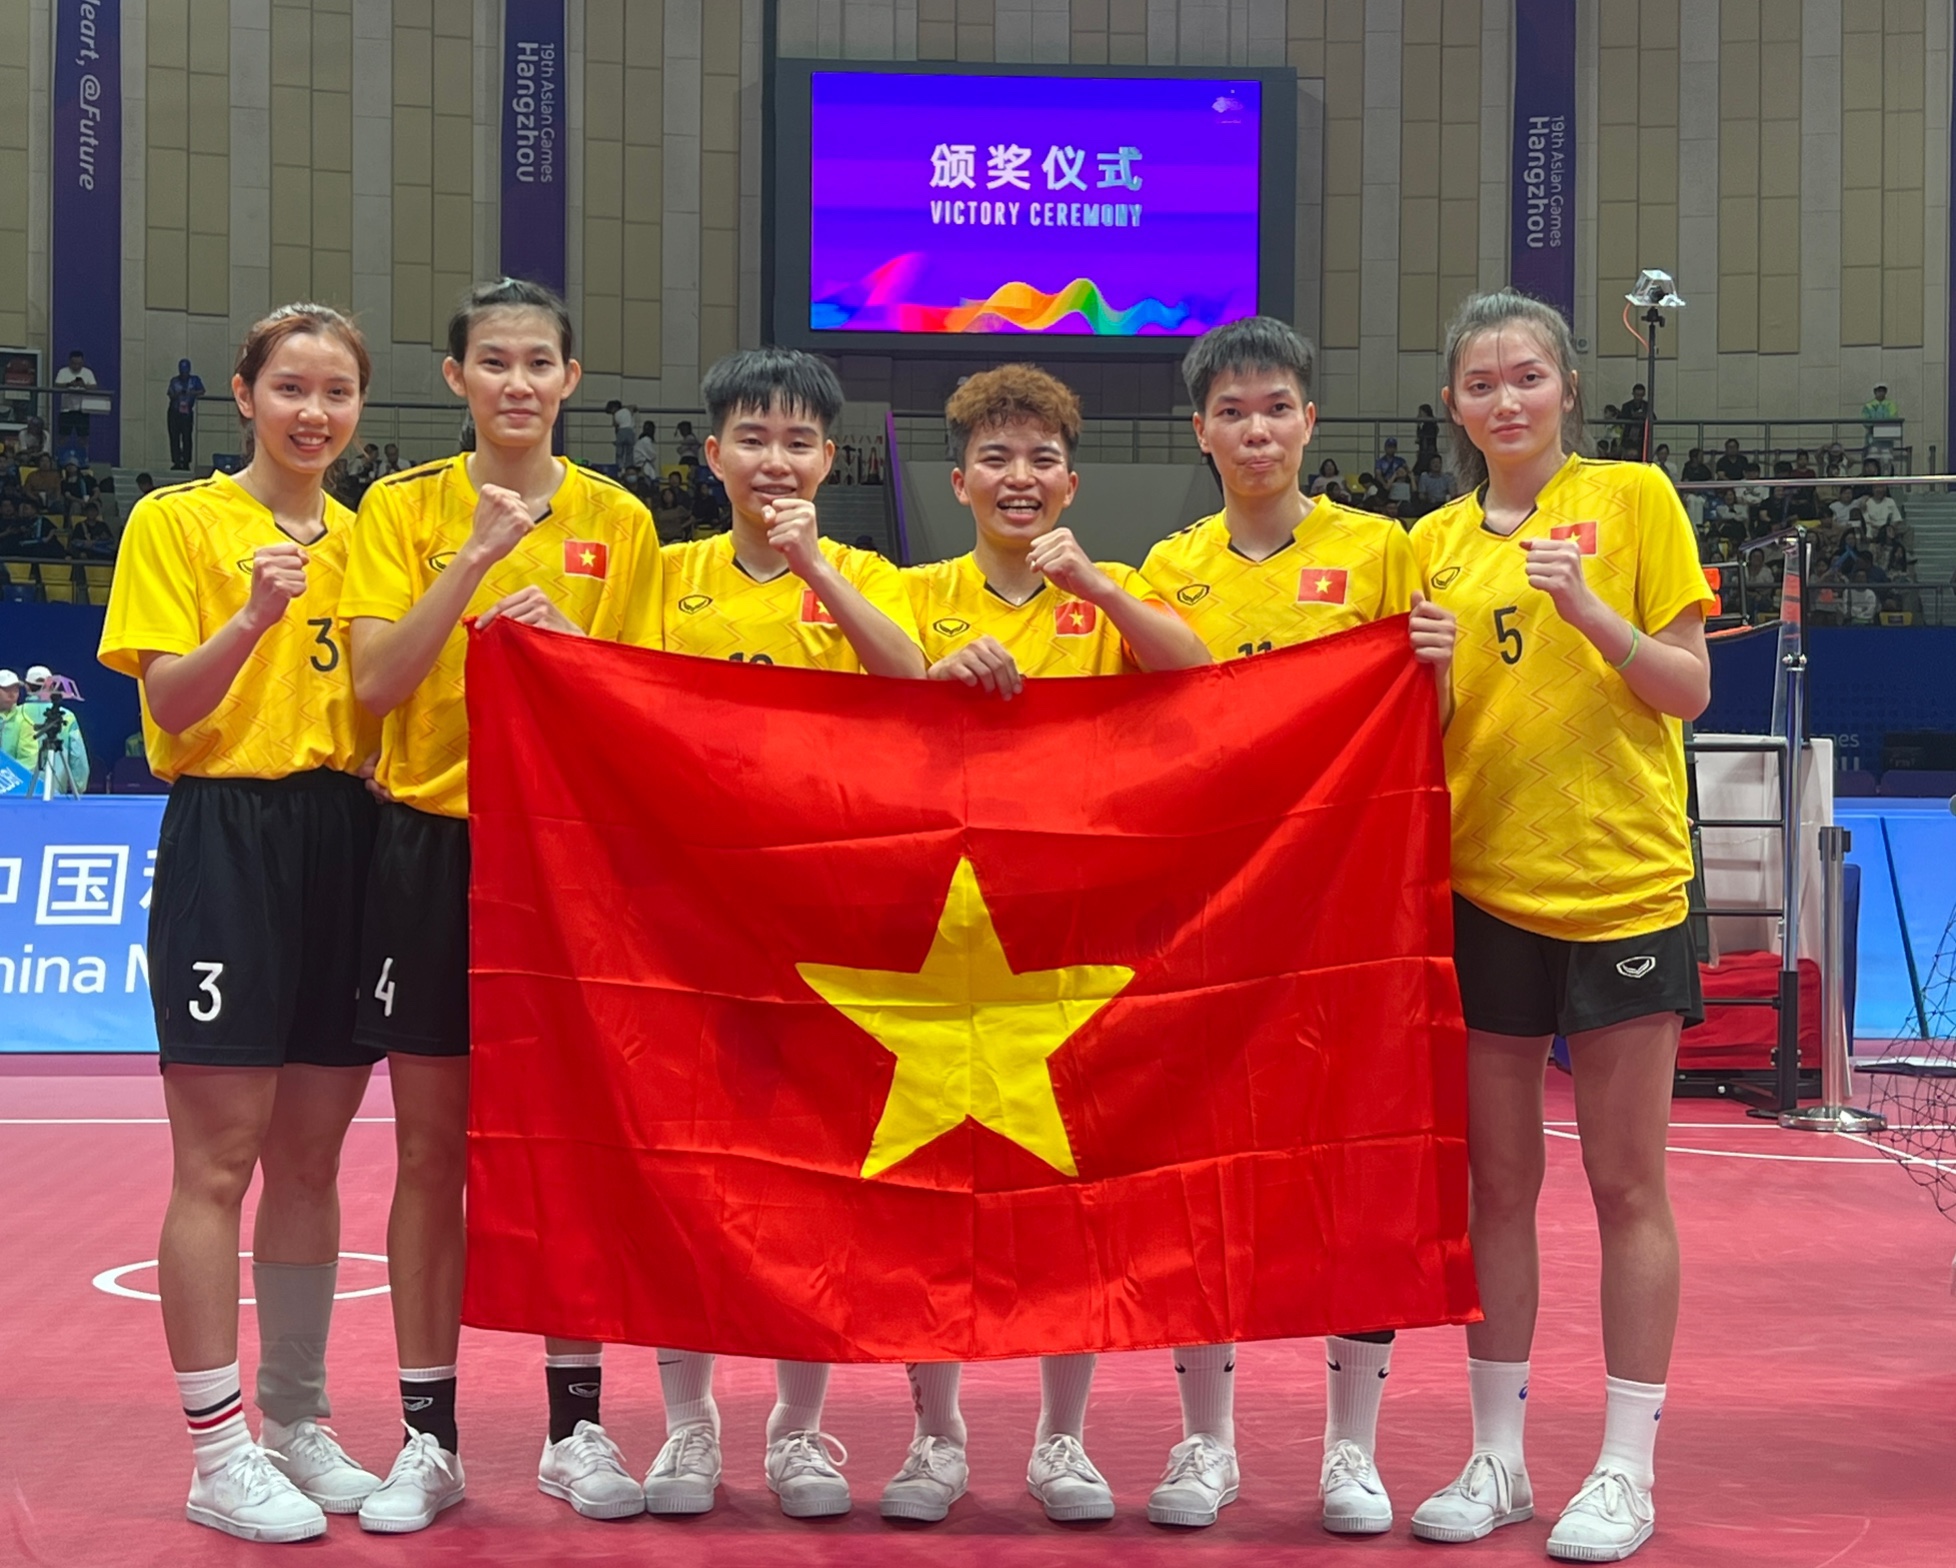 VĐV cầu mây tiết lộ yếu tố giúp đội tuyển Việt Nam giành HCV ASIAD 19 - Ảnh 4.